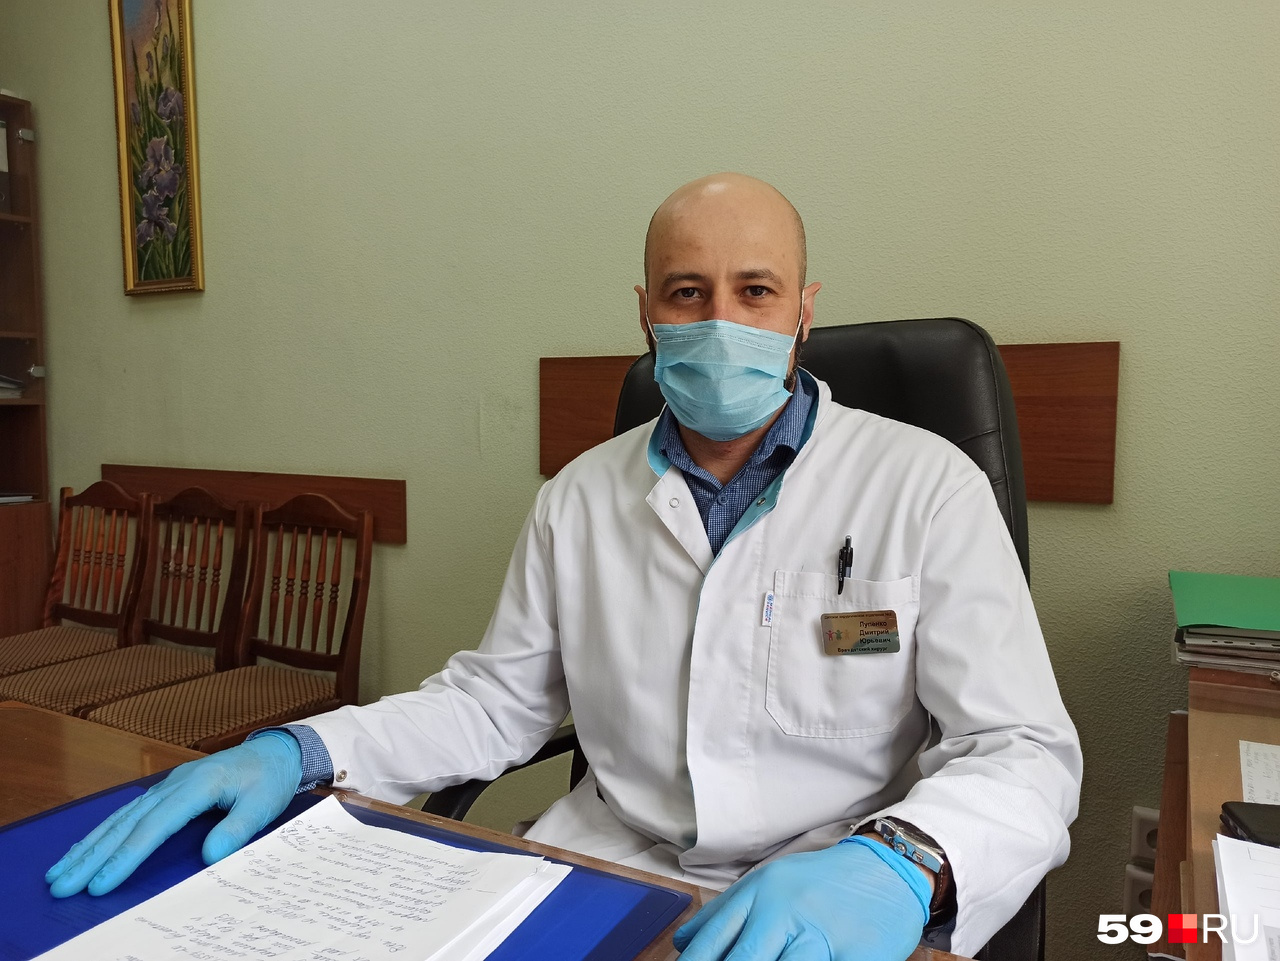 На работе Дмитрий общается с пациентами не только по поводу лечения. Иногда он спрашивает, какие книги они читают или какую музыку слушают